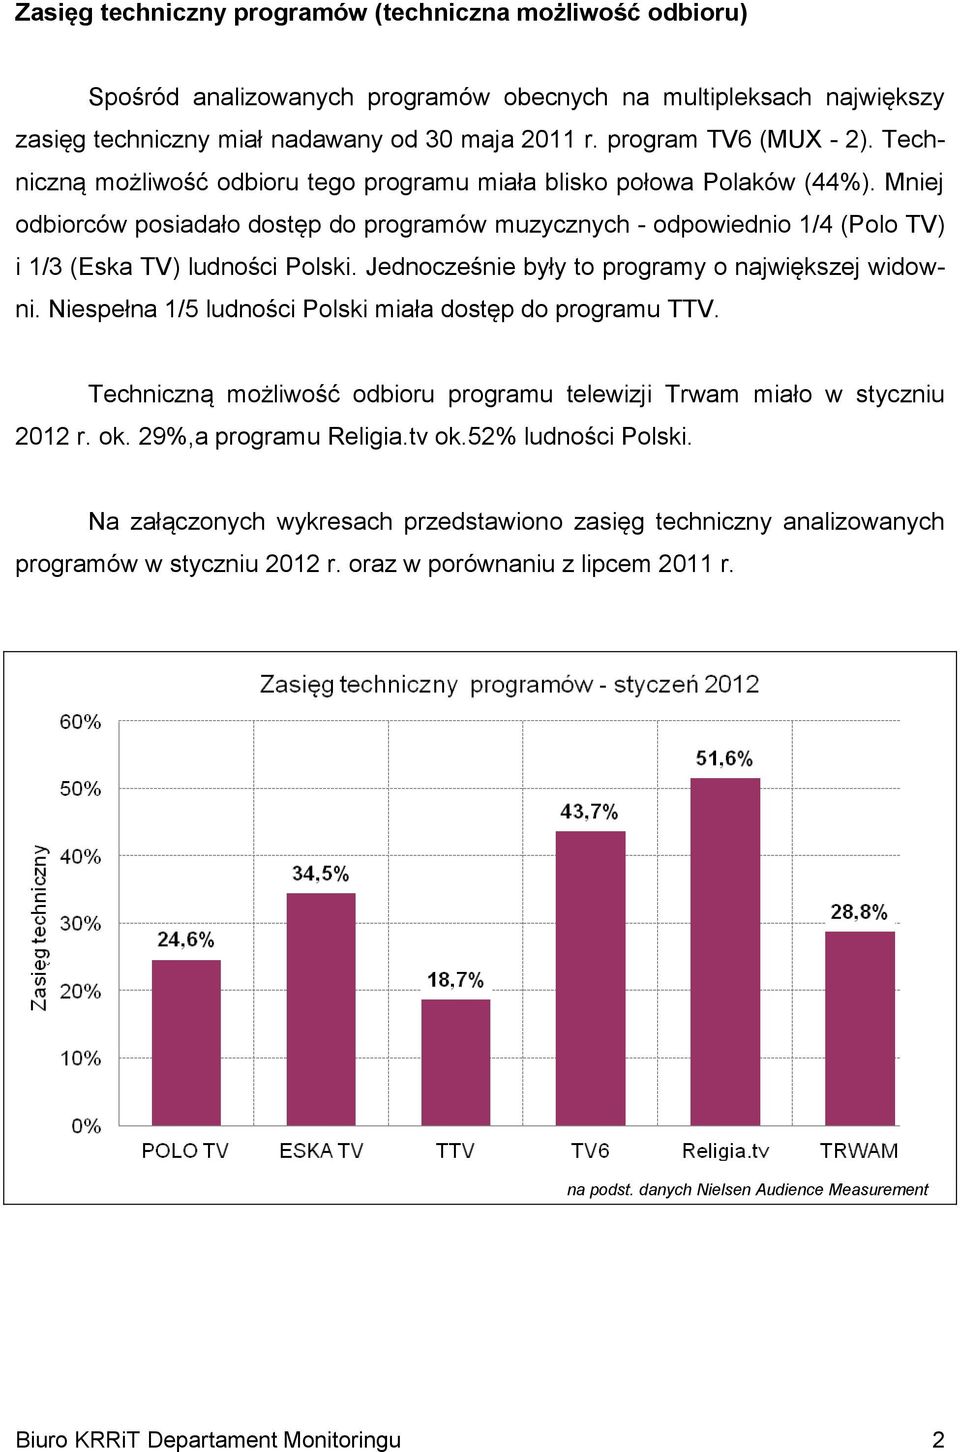 Mniej odbiorców posiadało dostęp do programów muzycznych - odpowiednio 1/4 (Polo TV) i 1/3 (Eska TV) ludności Polski. Jednocześnie były to programy o największej widowni.